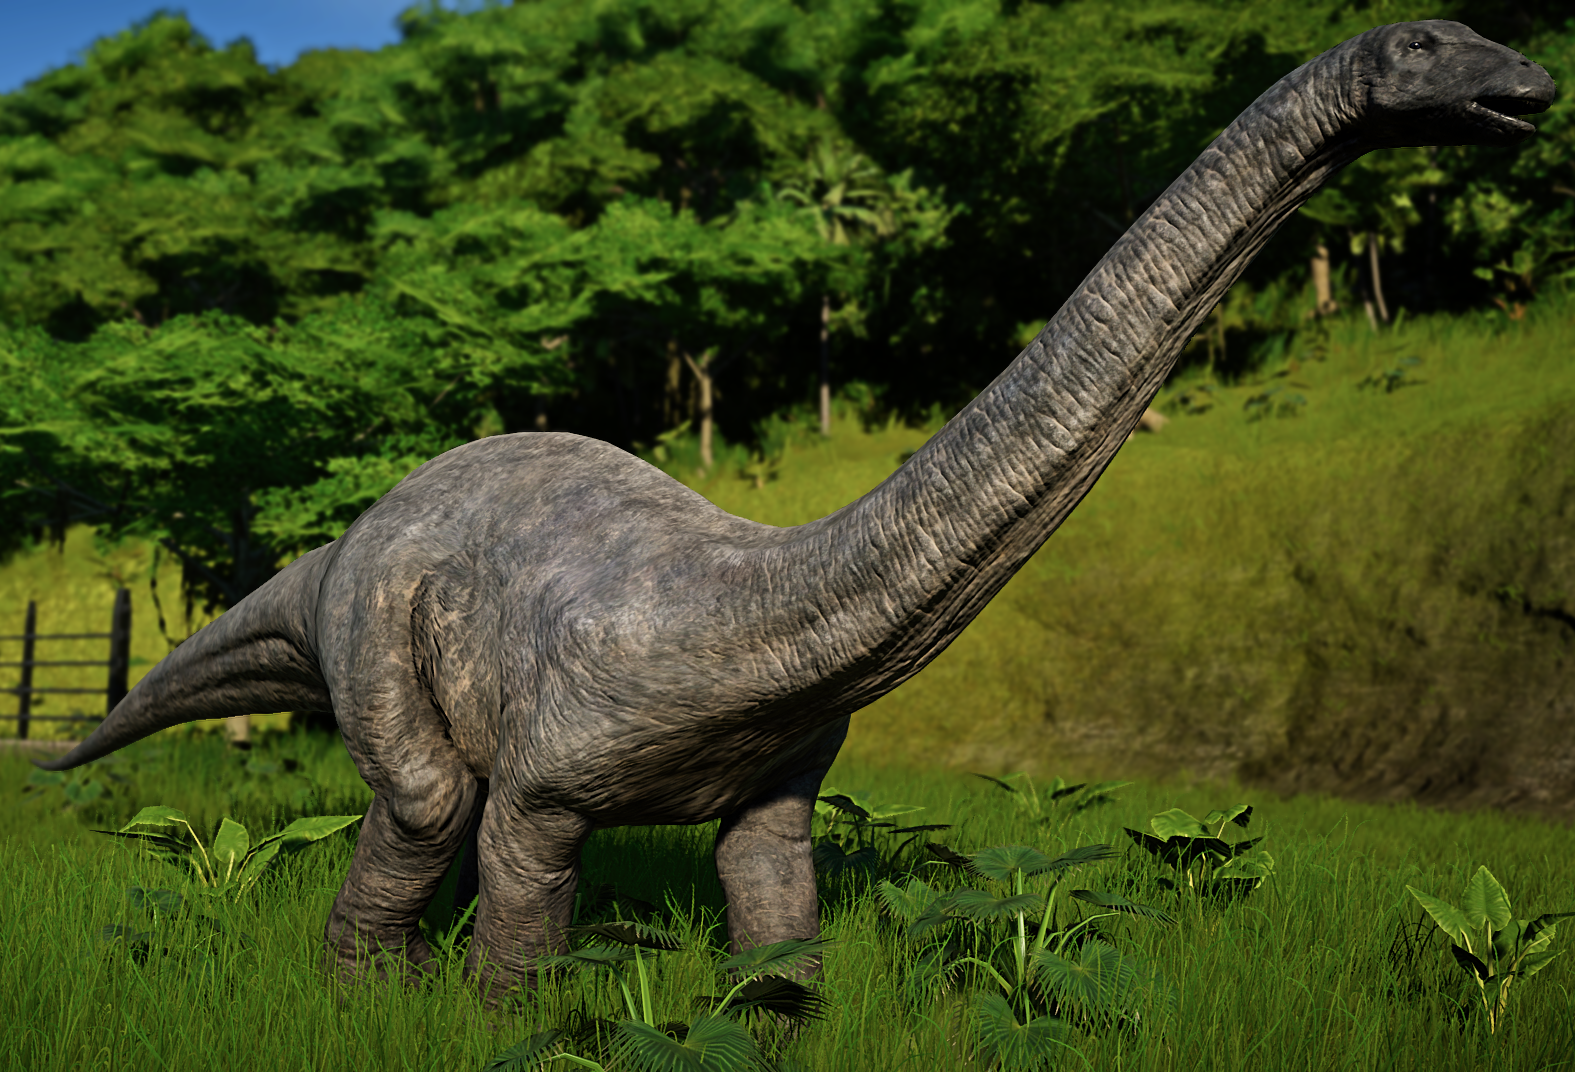 jurassic world the game apatosaurus